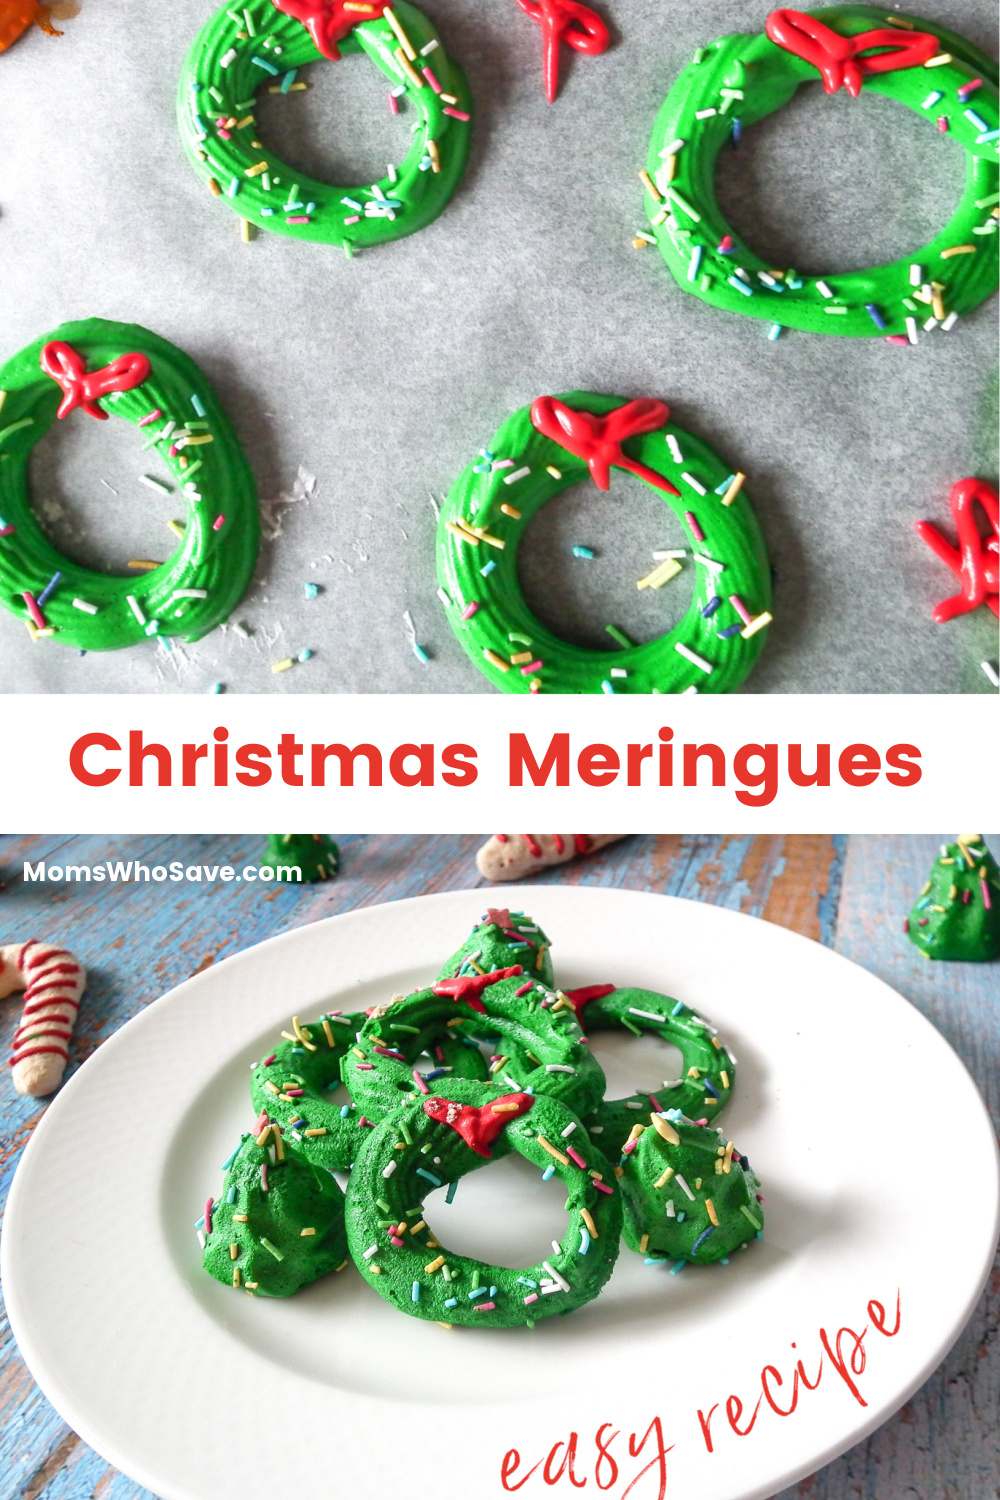 Christmas meringues